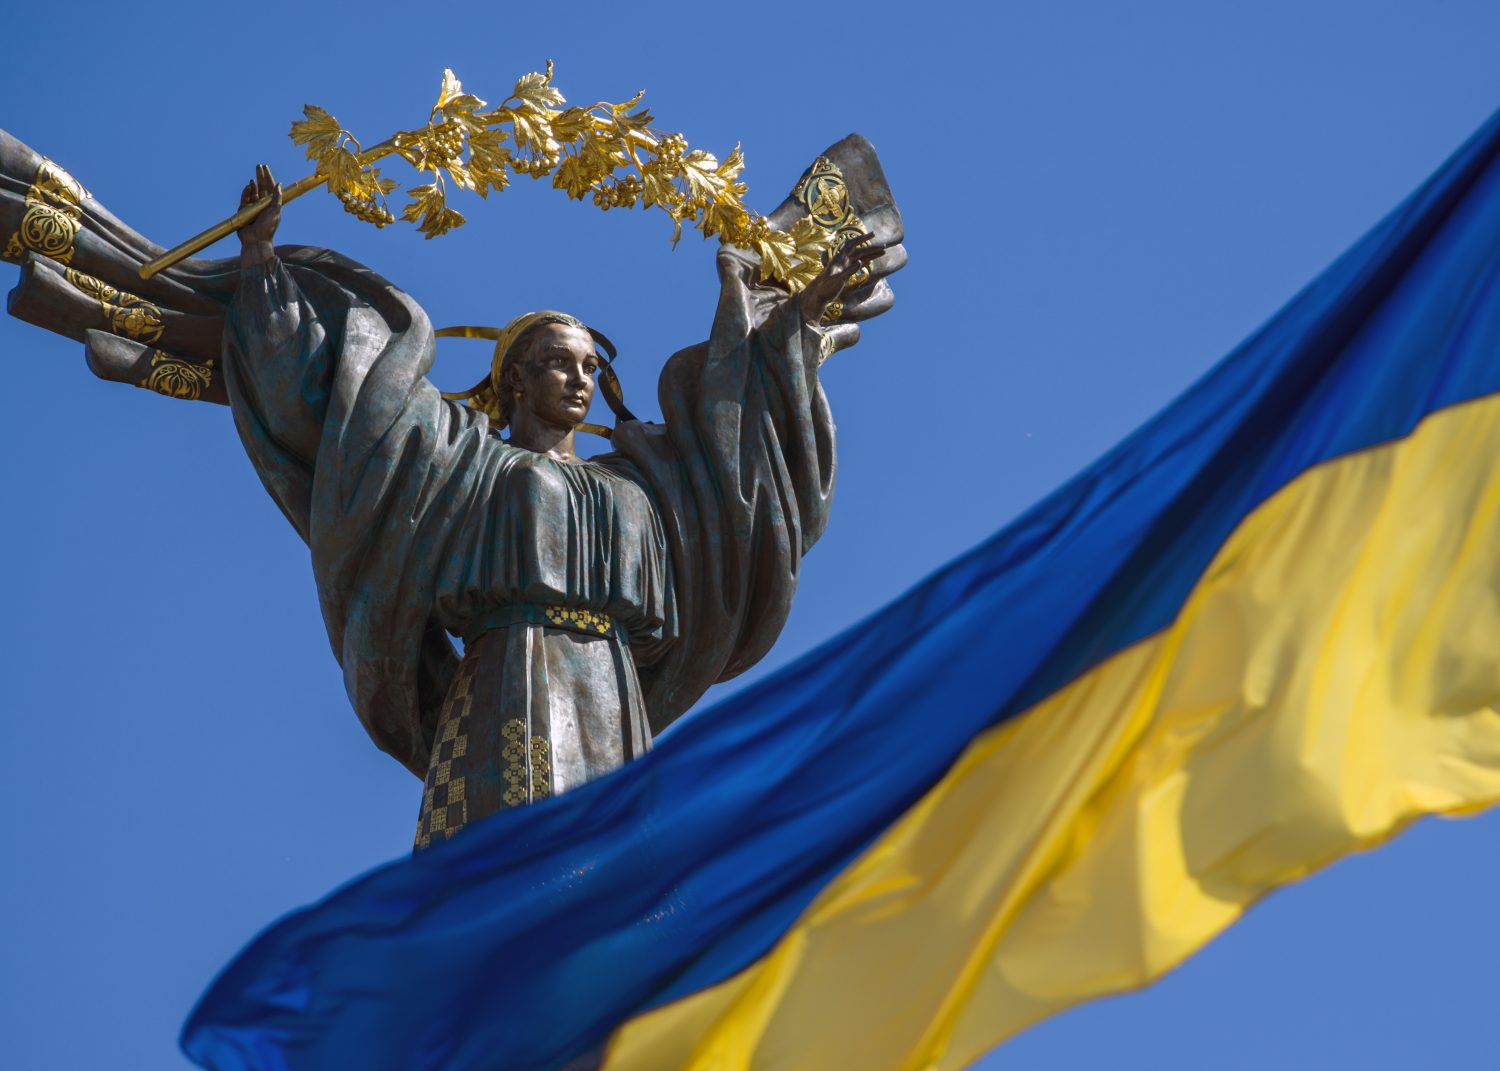 Dịch vụ An ninh Ukraine (SBU) đã đóng cửa một số sàn giao dịch tiền mã hóa